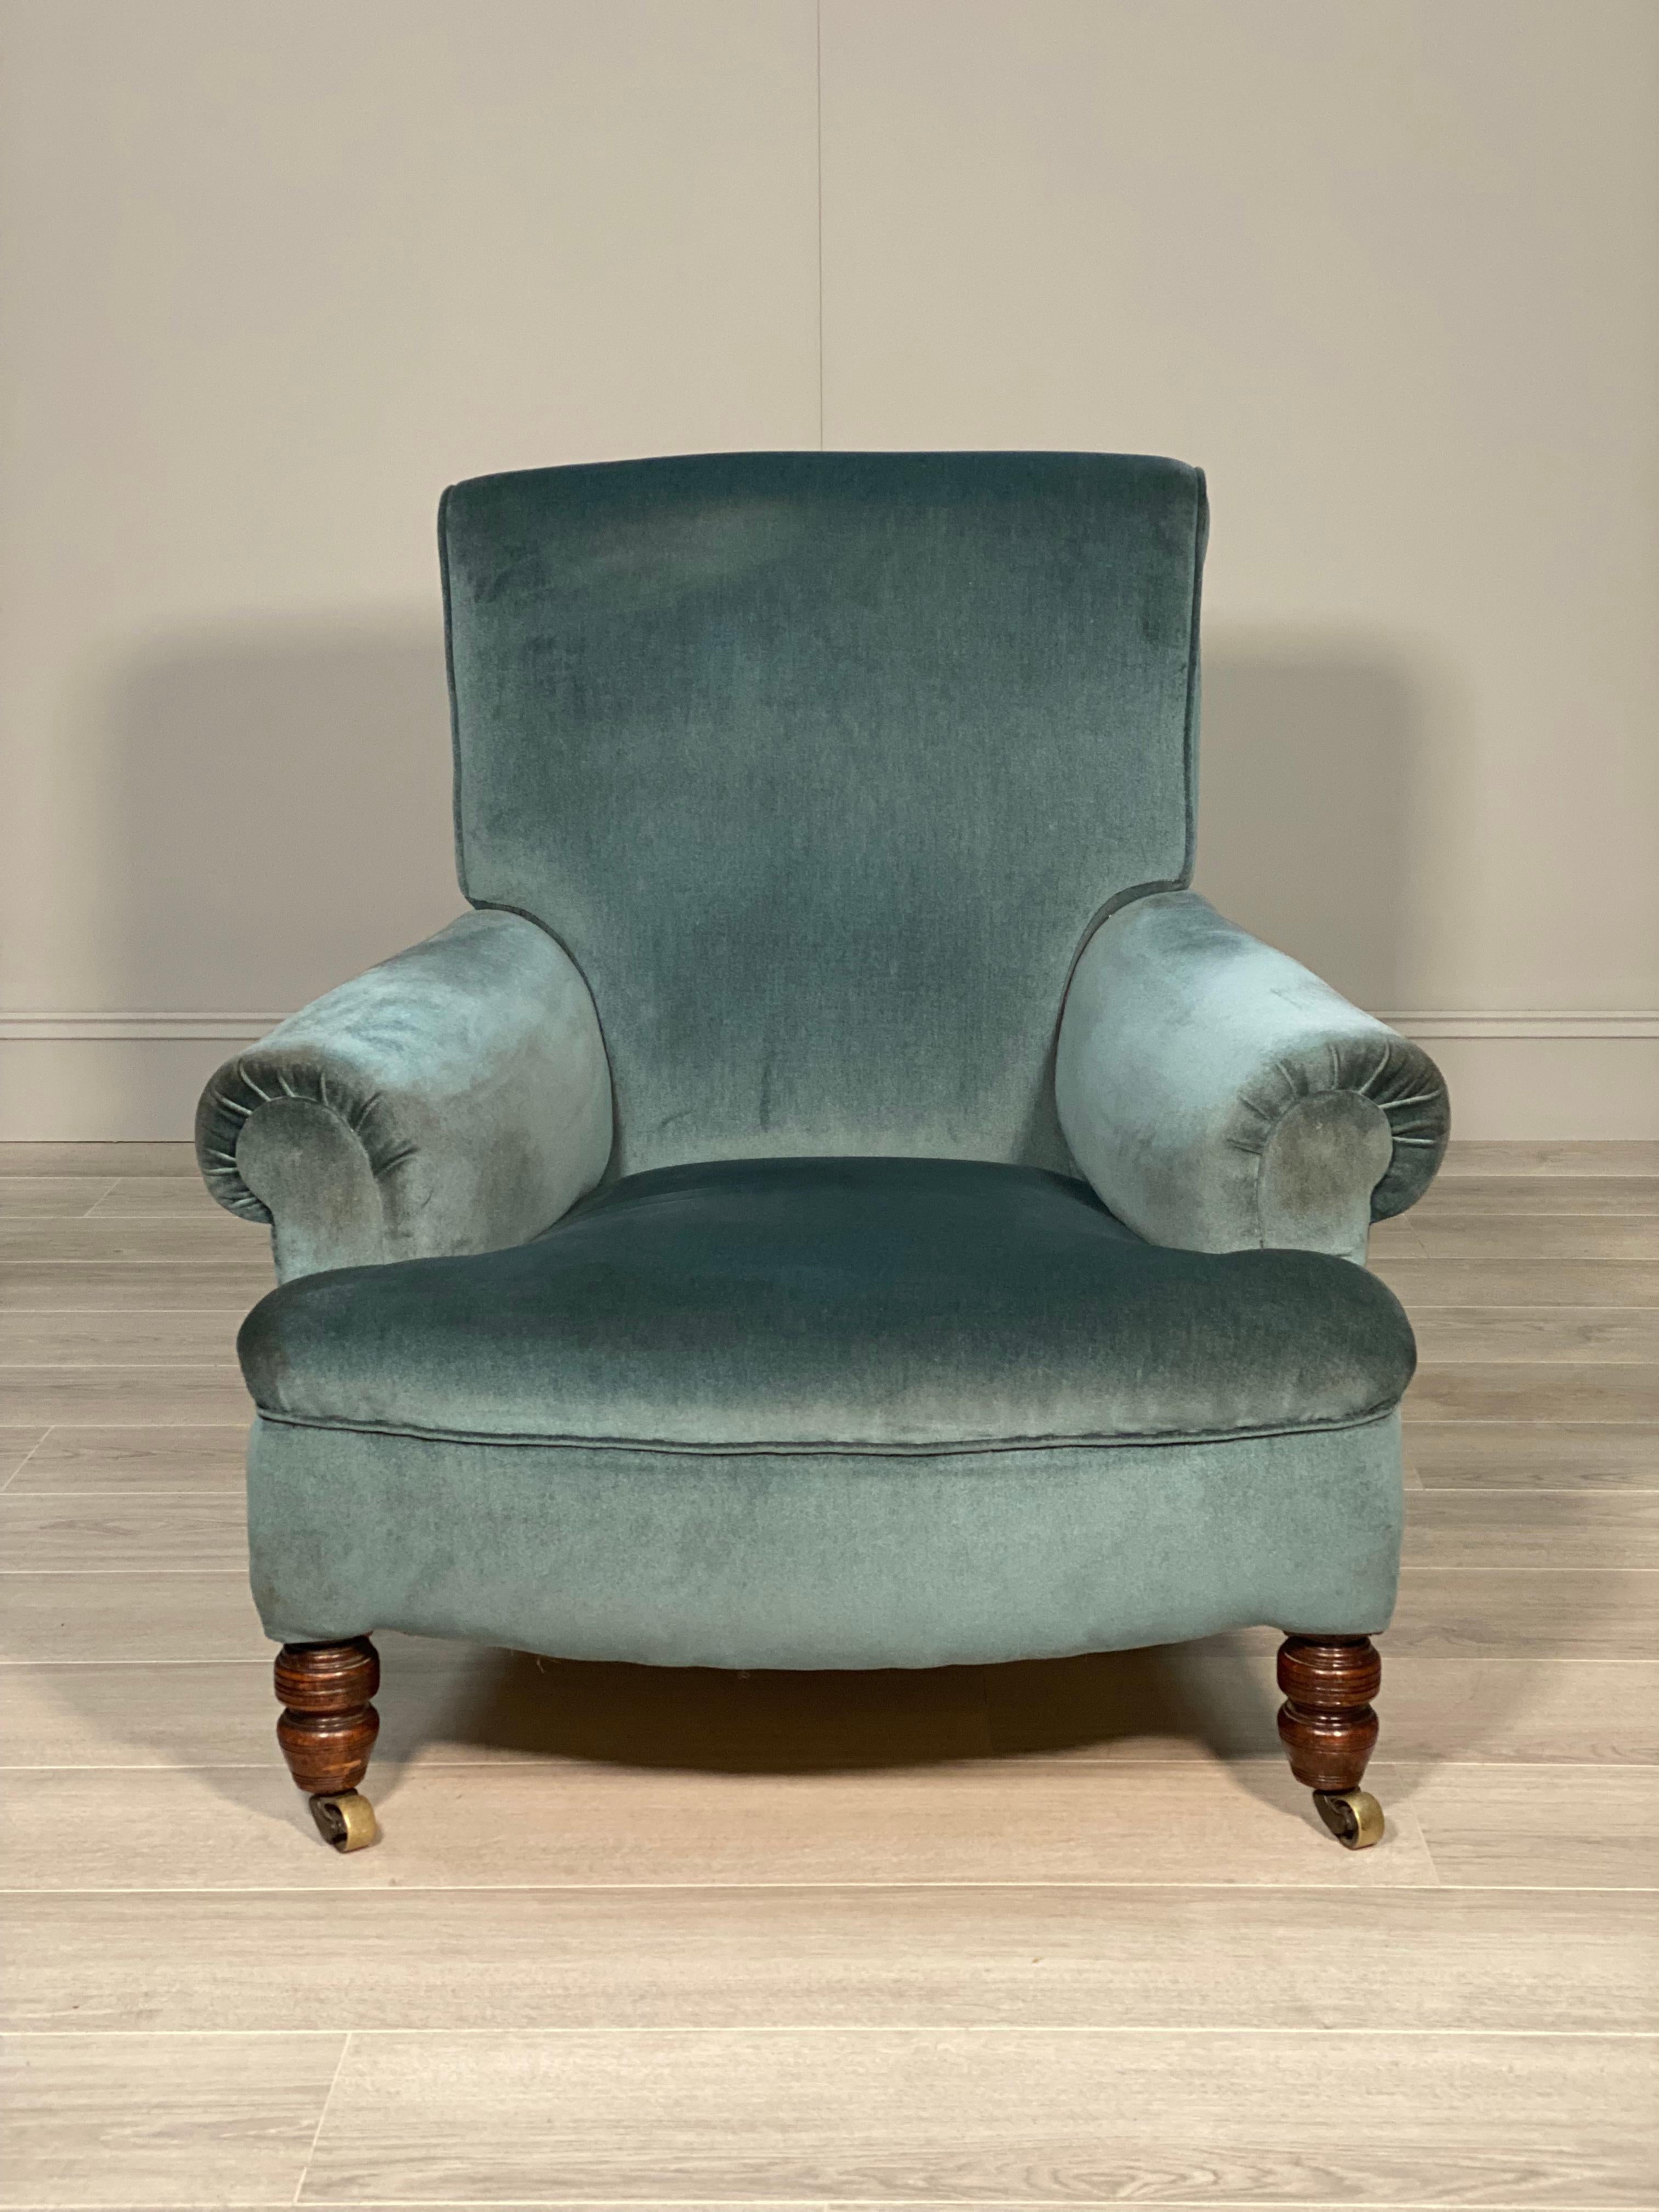 Ein tief sitzender Sessel im Landhausstil nach Howard aus der zweiten Hälfte des 19. Jahrhunderts. Der Sessel steht auf gedrechselten Mahagoni-Beinen an der Vorderseite und Mahagoni-Beinen an der Rückseite, alle mit hochwertigen Messing-Rollen. Der